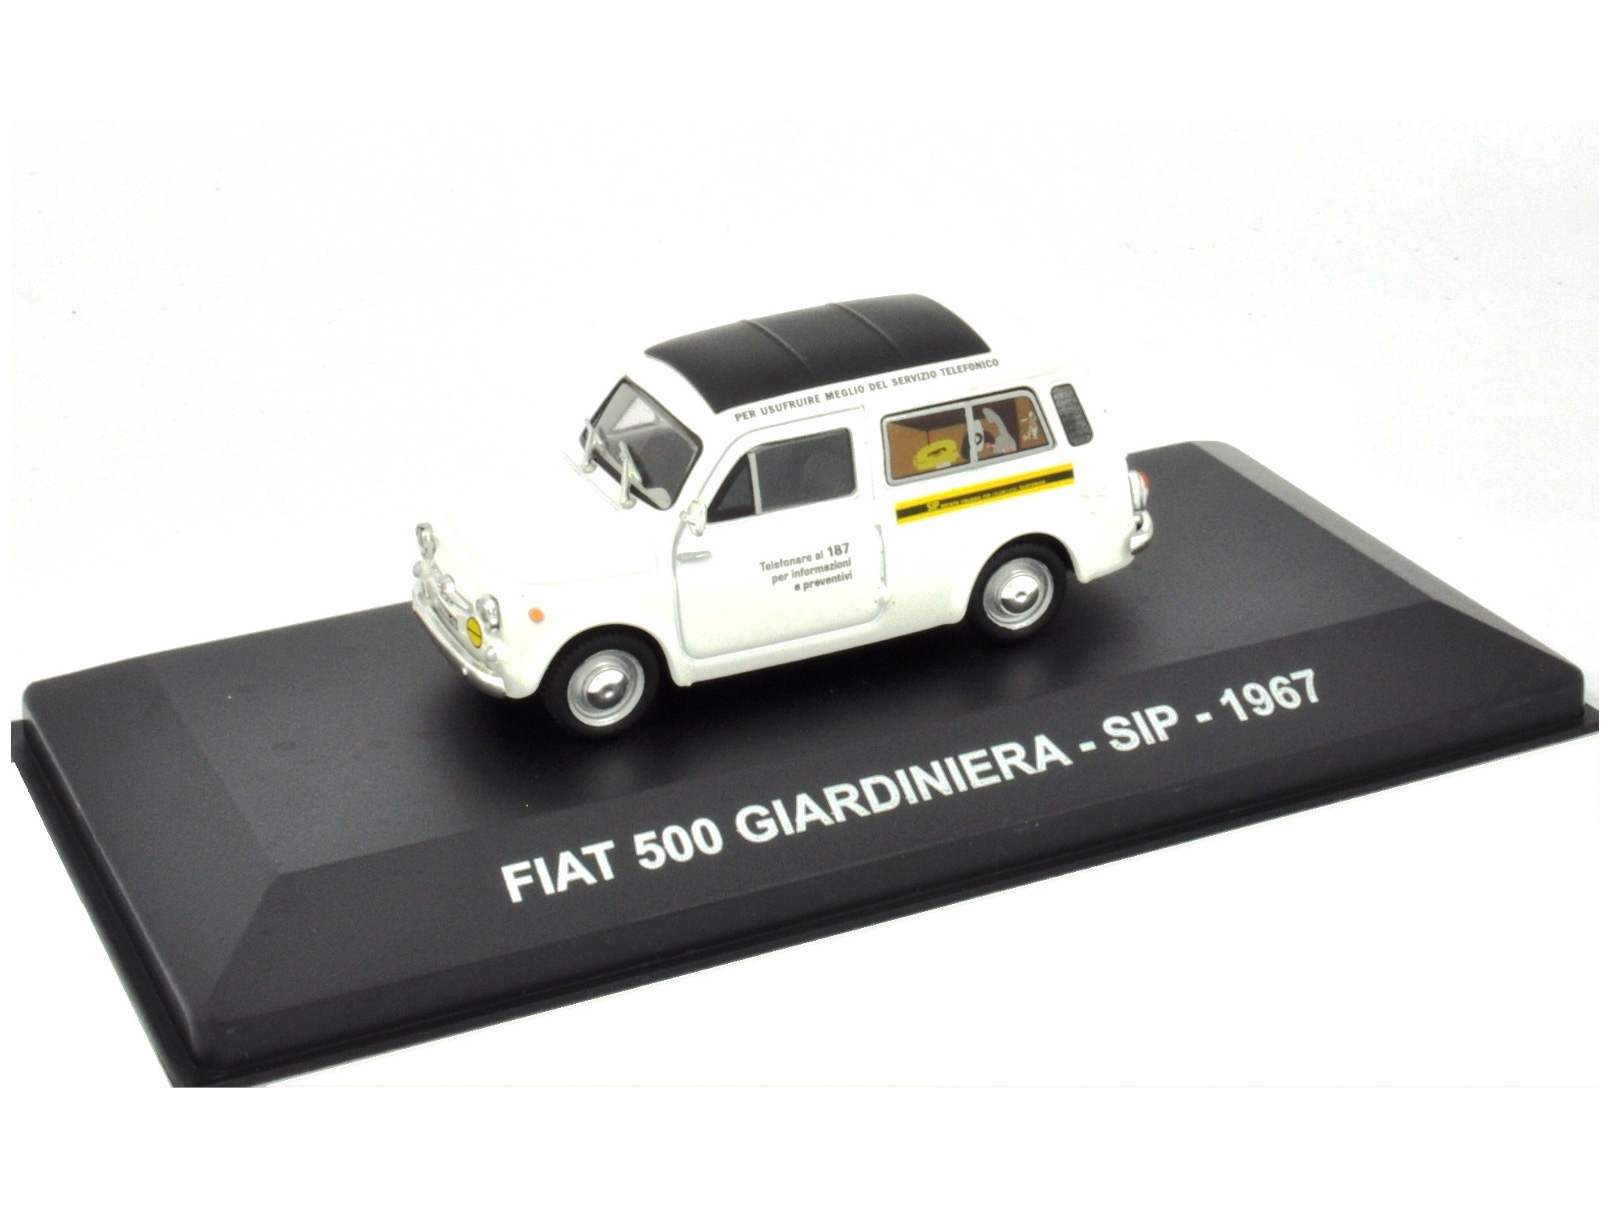 FIAT 500 GIARDINIERA - SIP - 1967